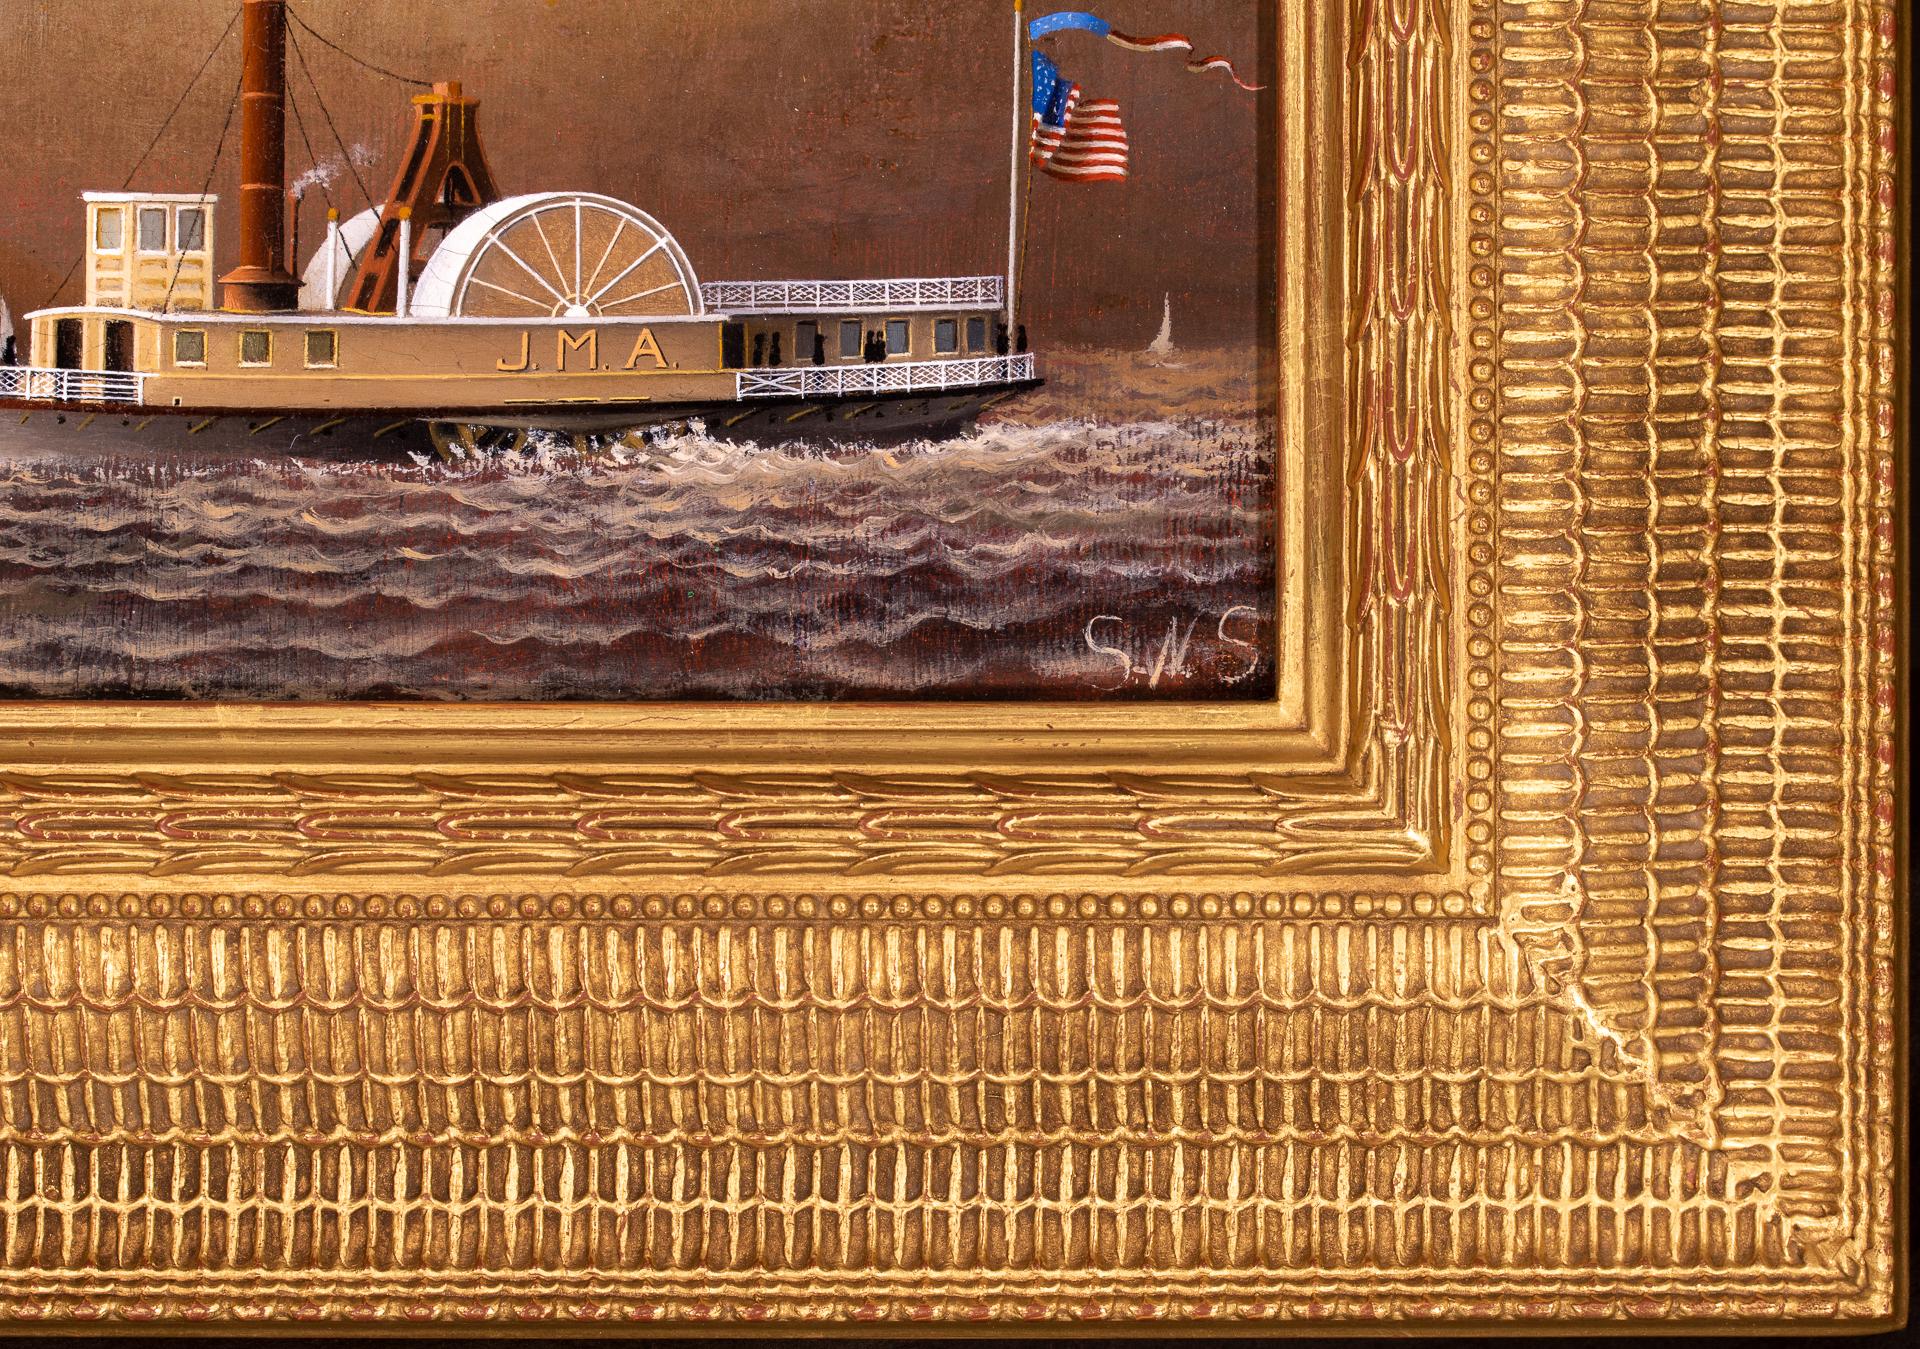 Dieses kleine, fein gemalte Stück zeigt den Seitenraddampfer J.M.A., der Passagiere auf dem Hudson River befördert. Mit im Wind flatternden Fahnen und Schaumkronen auf dem Fluss macht sie eine gute Figur auf dem Wasser. Der einzige Schornstein und